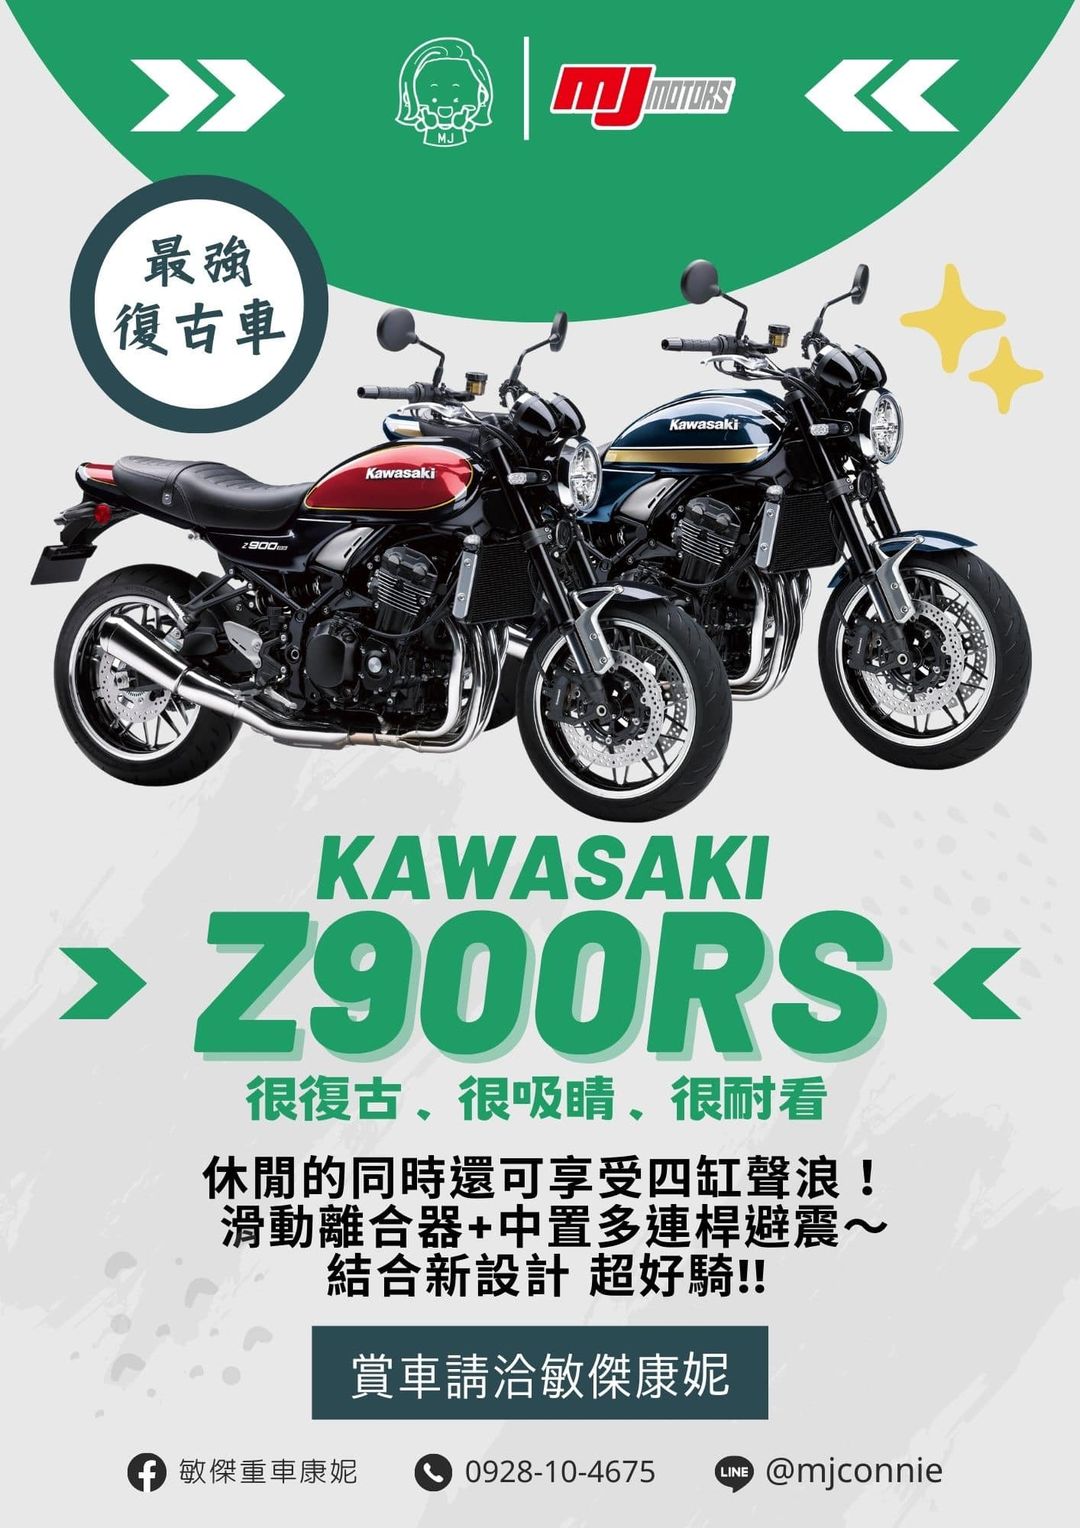 【敏傑車業資深銷售專員 康妮 Connie】KAWASAKI Z900RS - 「Webike-摩托車市」 『敏傑康妮』Kawasaki Z900RS 四缸聲浪 迷人好聽 馬力足夠 歡迎您一同加入RS復古車行列 價格歡迎詢問